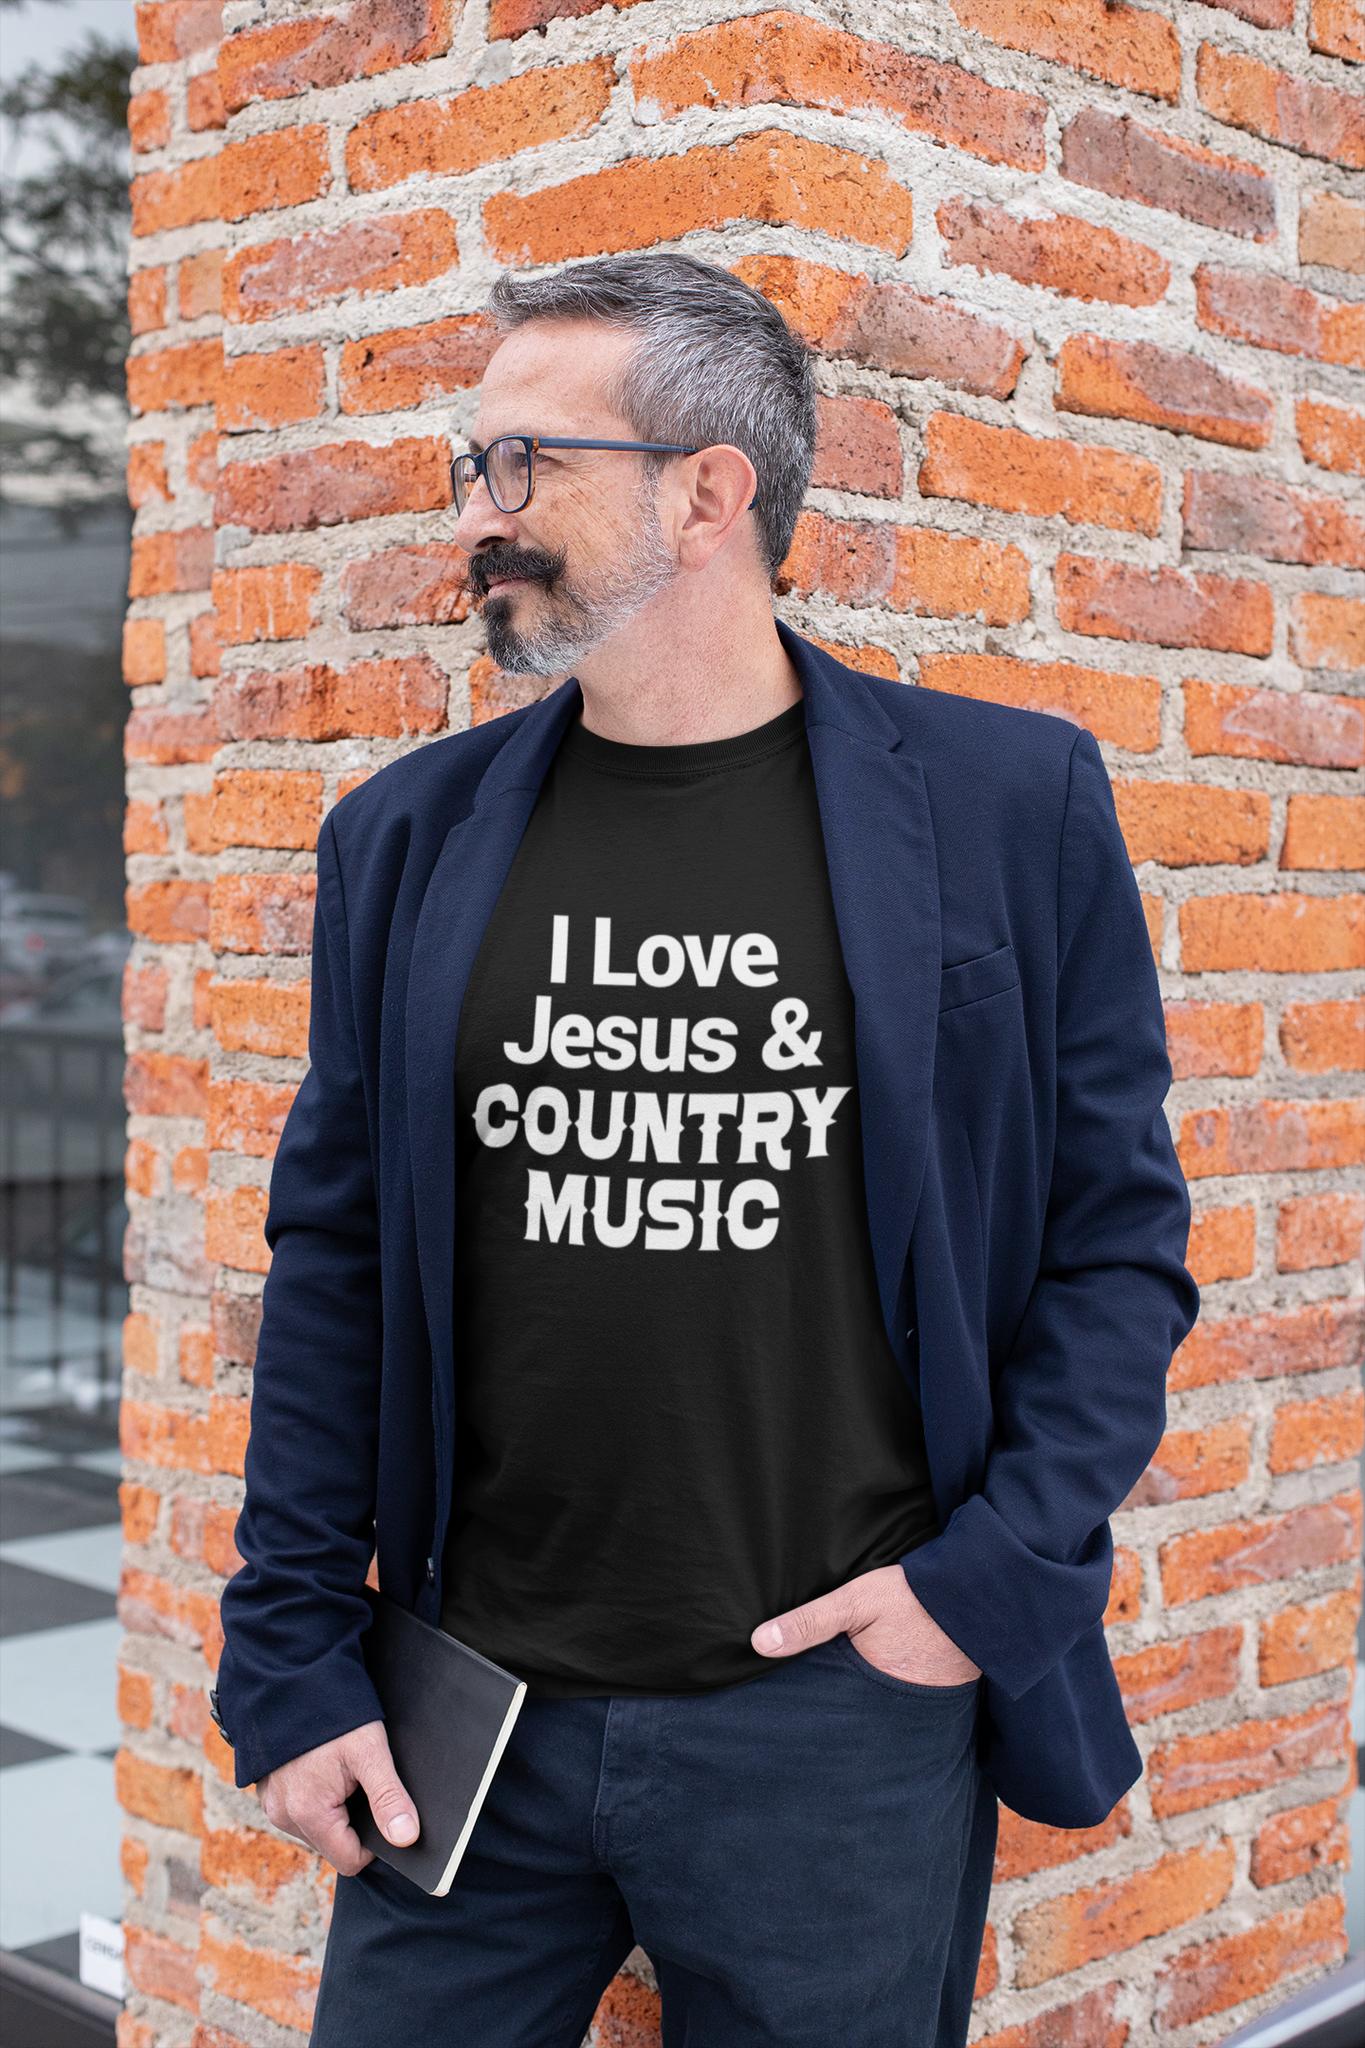 Jesus & Country Music